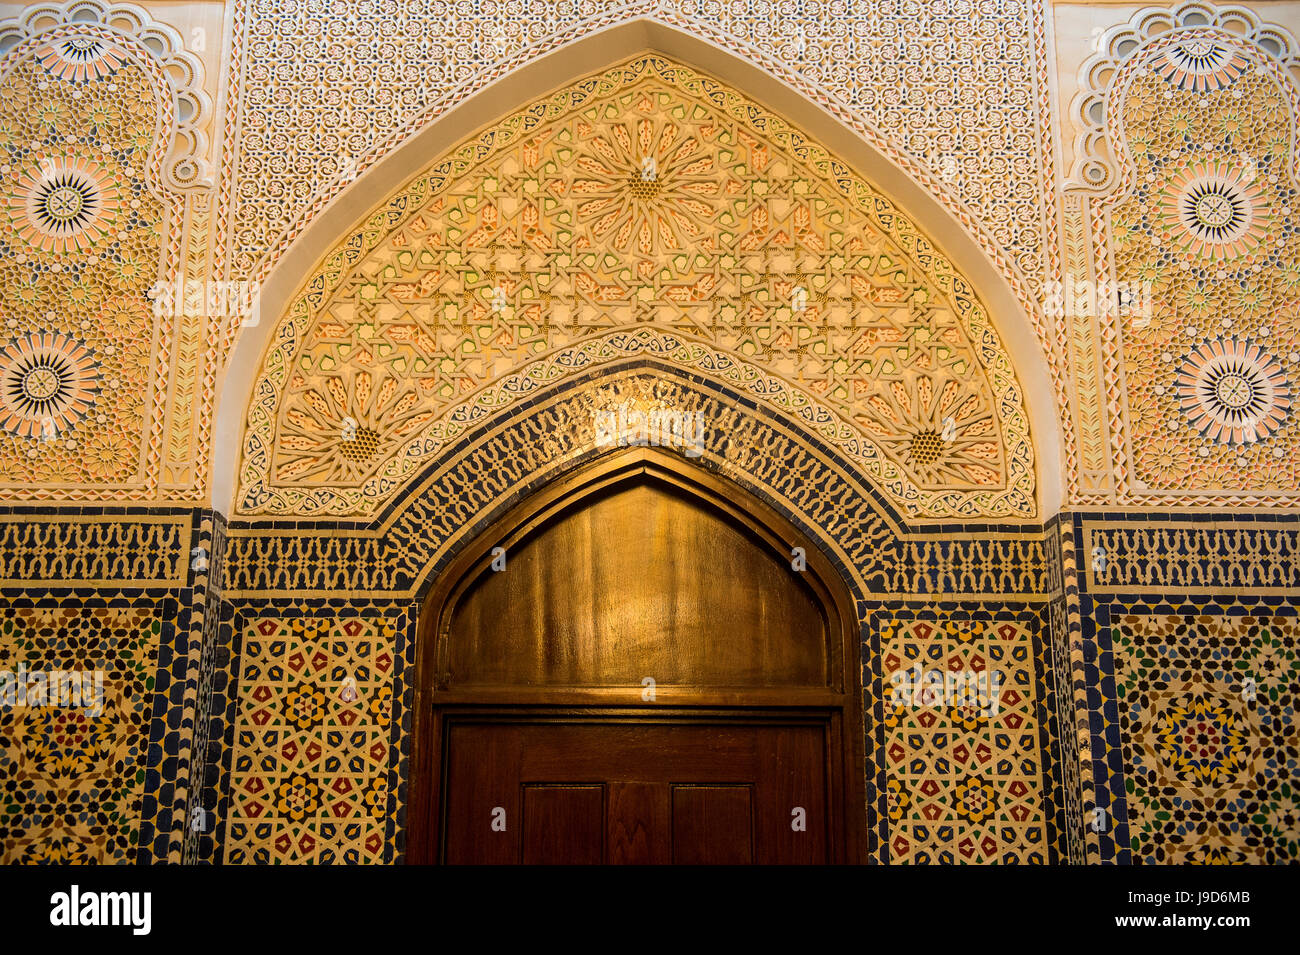 Belle porte ornée à l'intérieur de la Grande Mosquée, de la ville de Koweït, Koweït, Moyen-Orient Banque D'Images